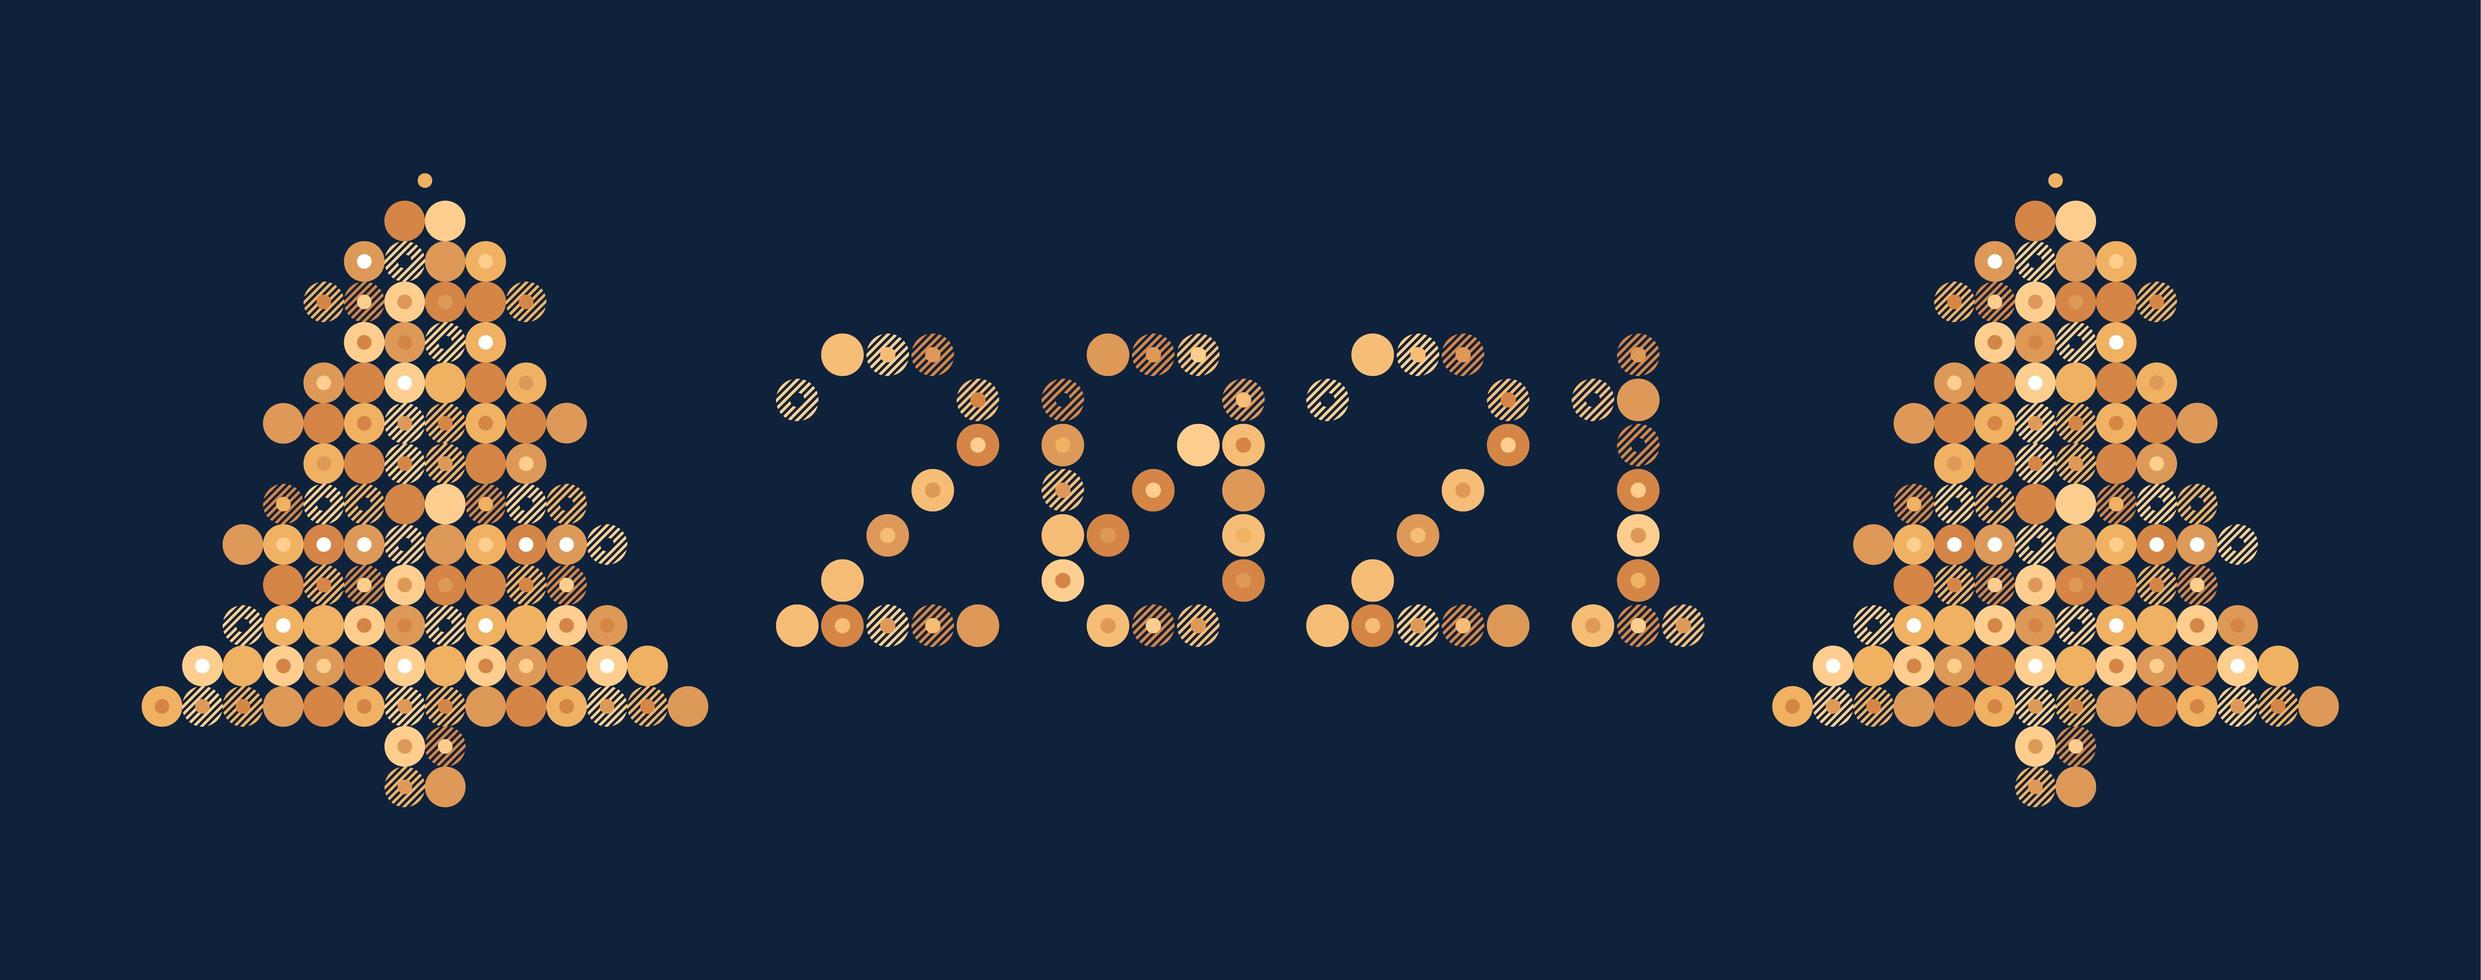 bonne année 2021 vecteur cercle pixel art typographie. illustration de carte de voeux de vacances avec arbre. lettres de bandes, de cercles et de points. affiches géométriques du nouvel an comme tableau de bord électronique.